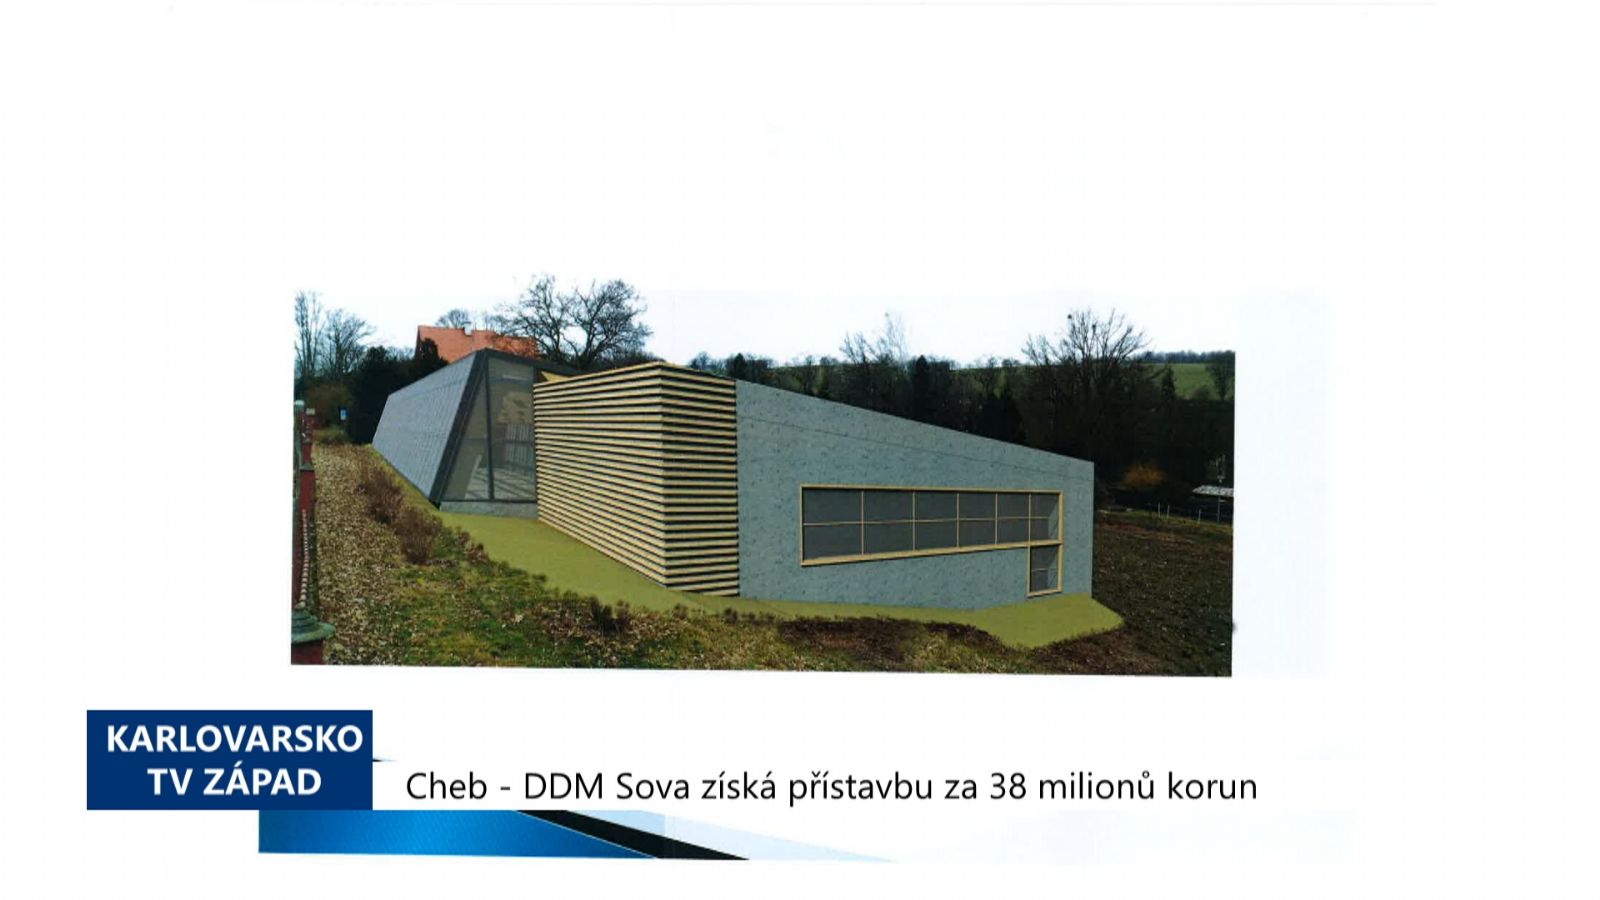 Cheb: DDM Sova získá přístavbu za 38 milionů korun (TV Západ)